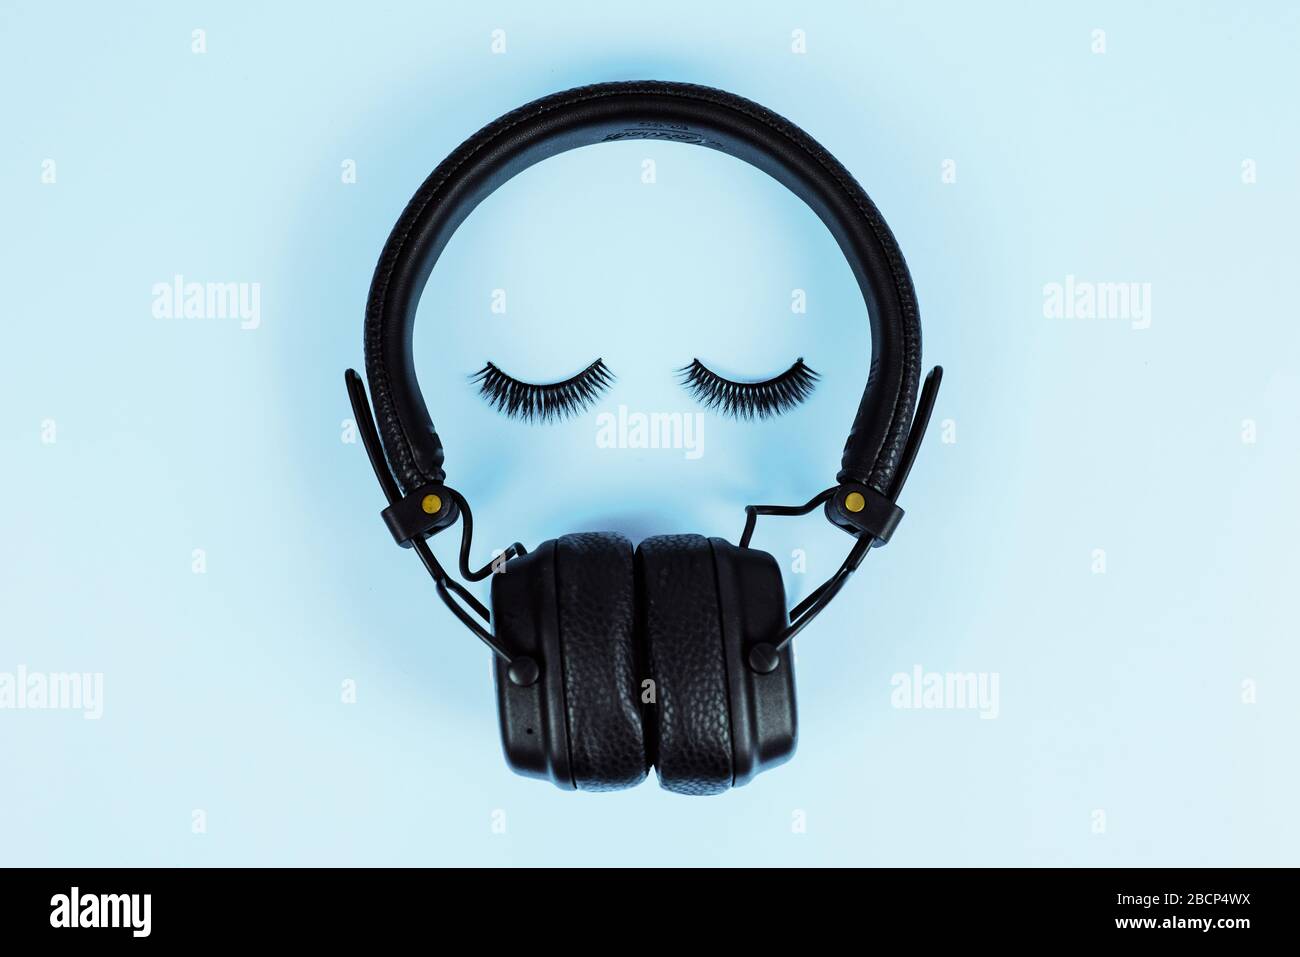 Das Konzept der Musik. Wimpelverlängerungskonzept. Bluetooth-Kopfhörer mit falschen Wimpern auf blauem Pastellhintergrund. Stockfoto